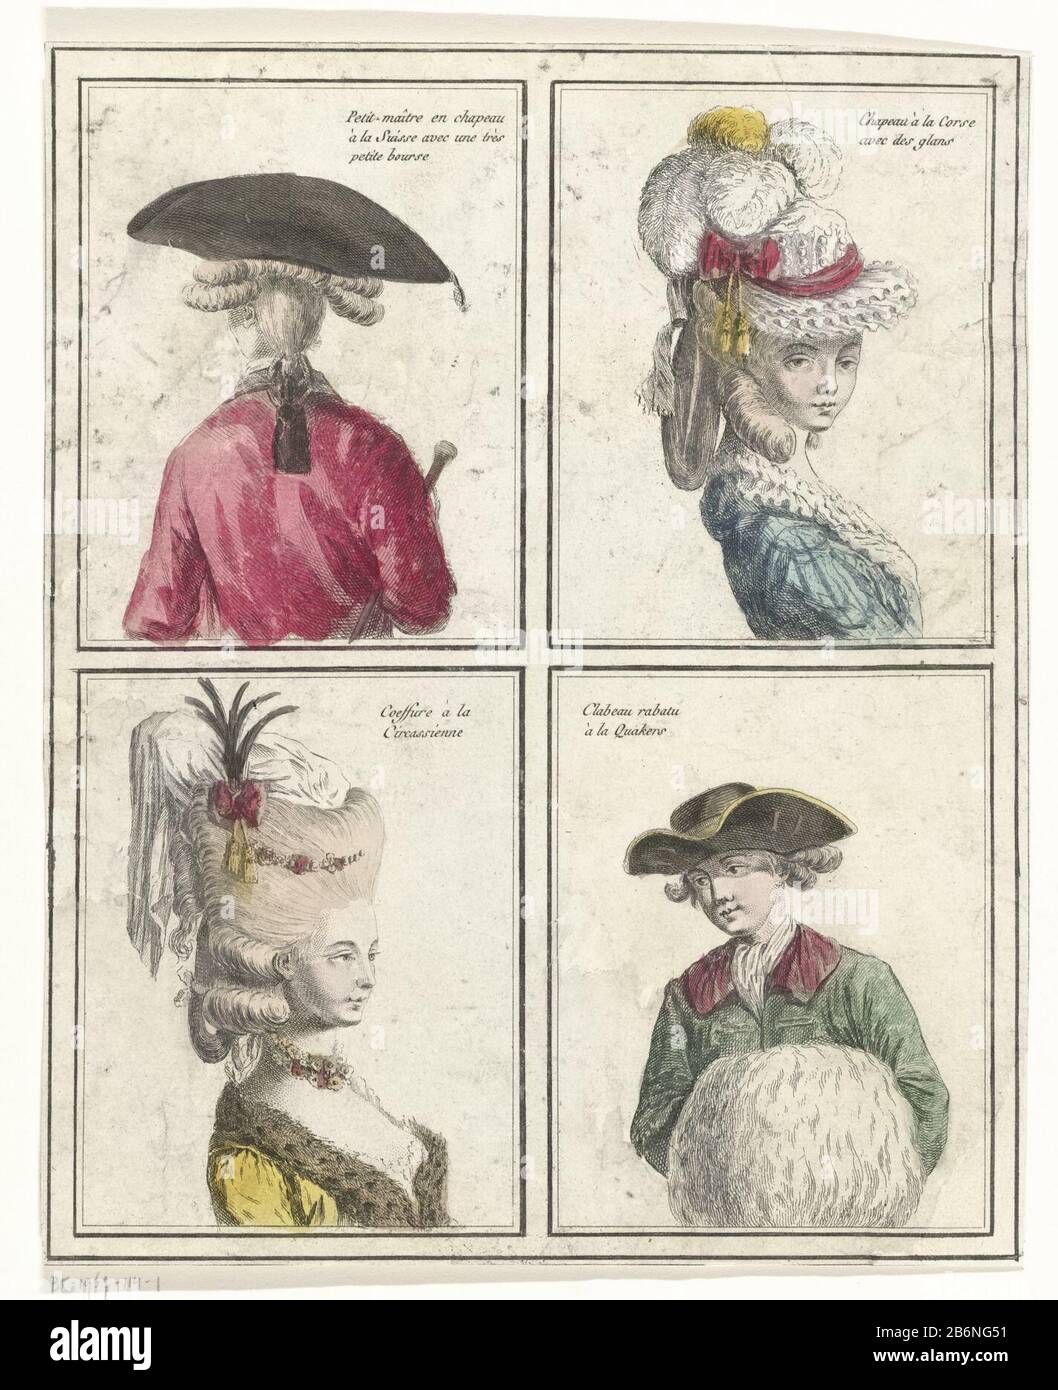 Two women's and two men's hairstyles with hats in boxes. From top left to  bottom right: Petit-maitre and chapeau à la Suisse avec une très petite  bourse; Chapeau à la Corse avec